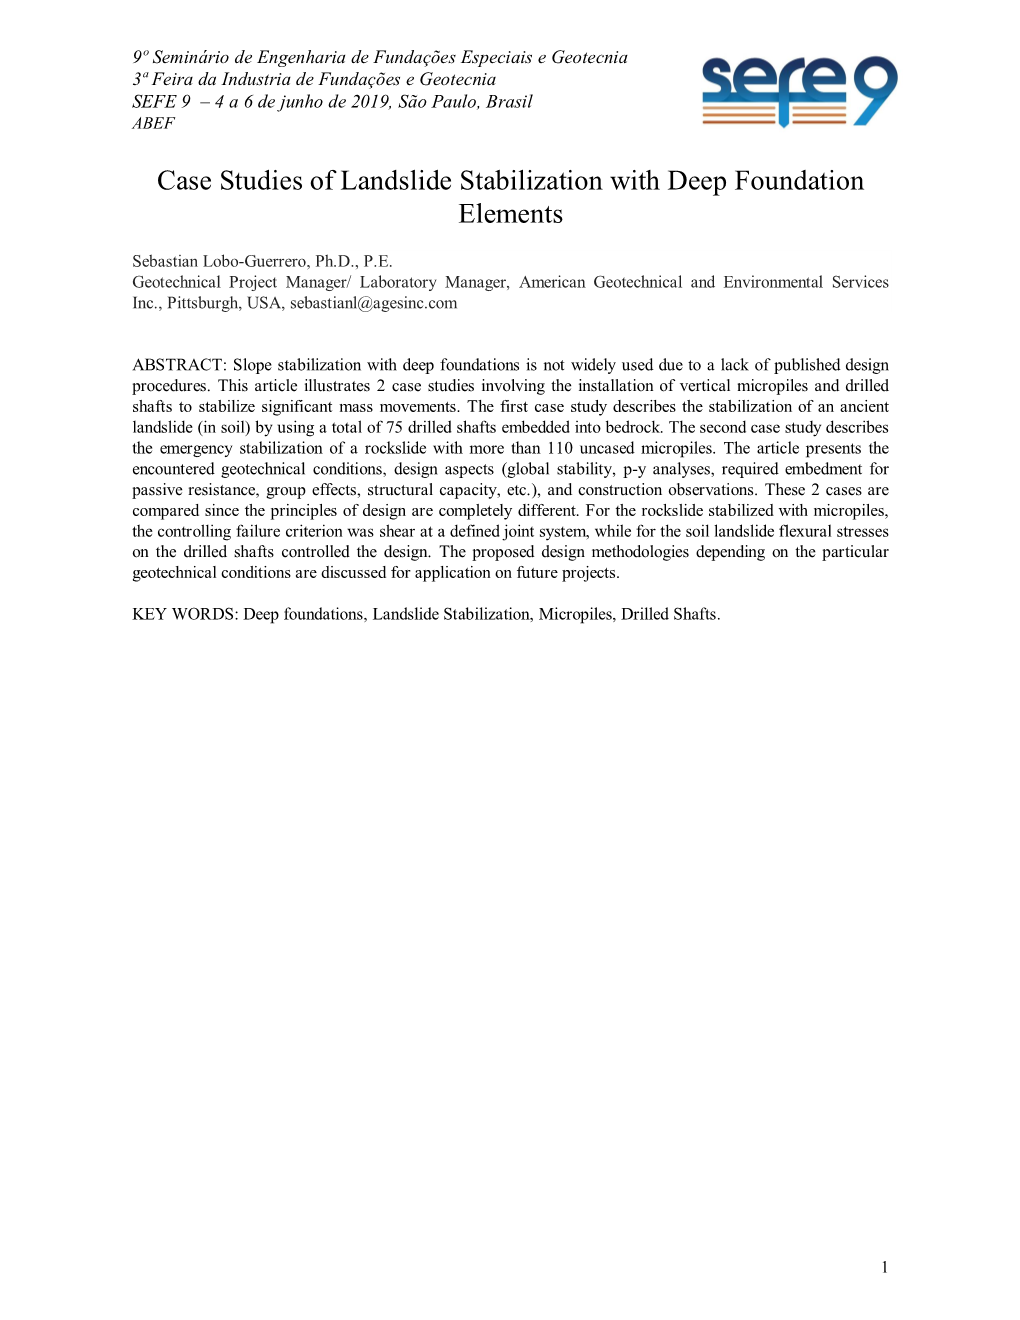 Case Studies of Landslide Stabilization with Deep Foundation Elements